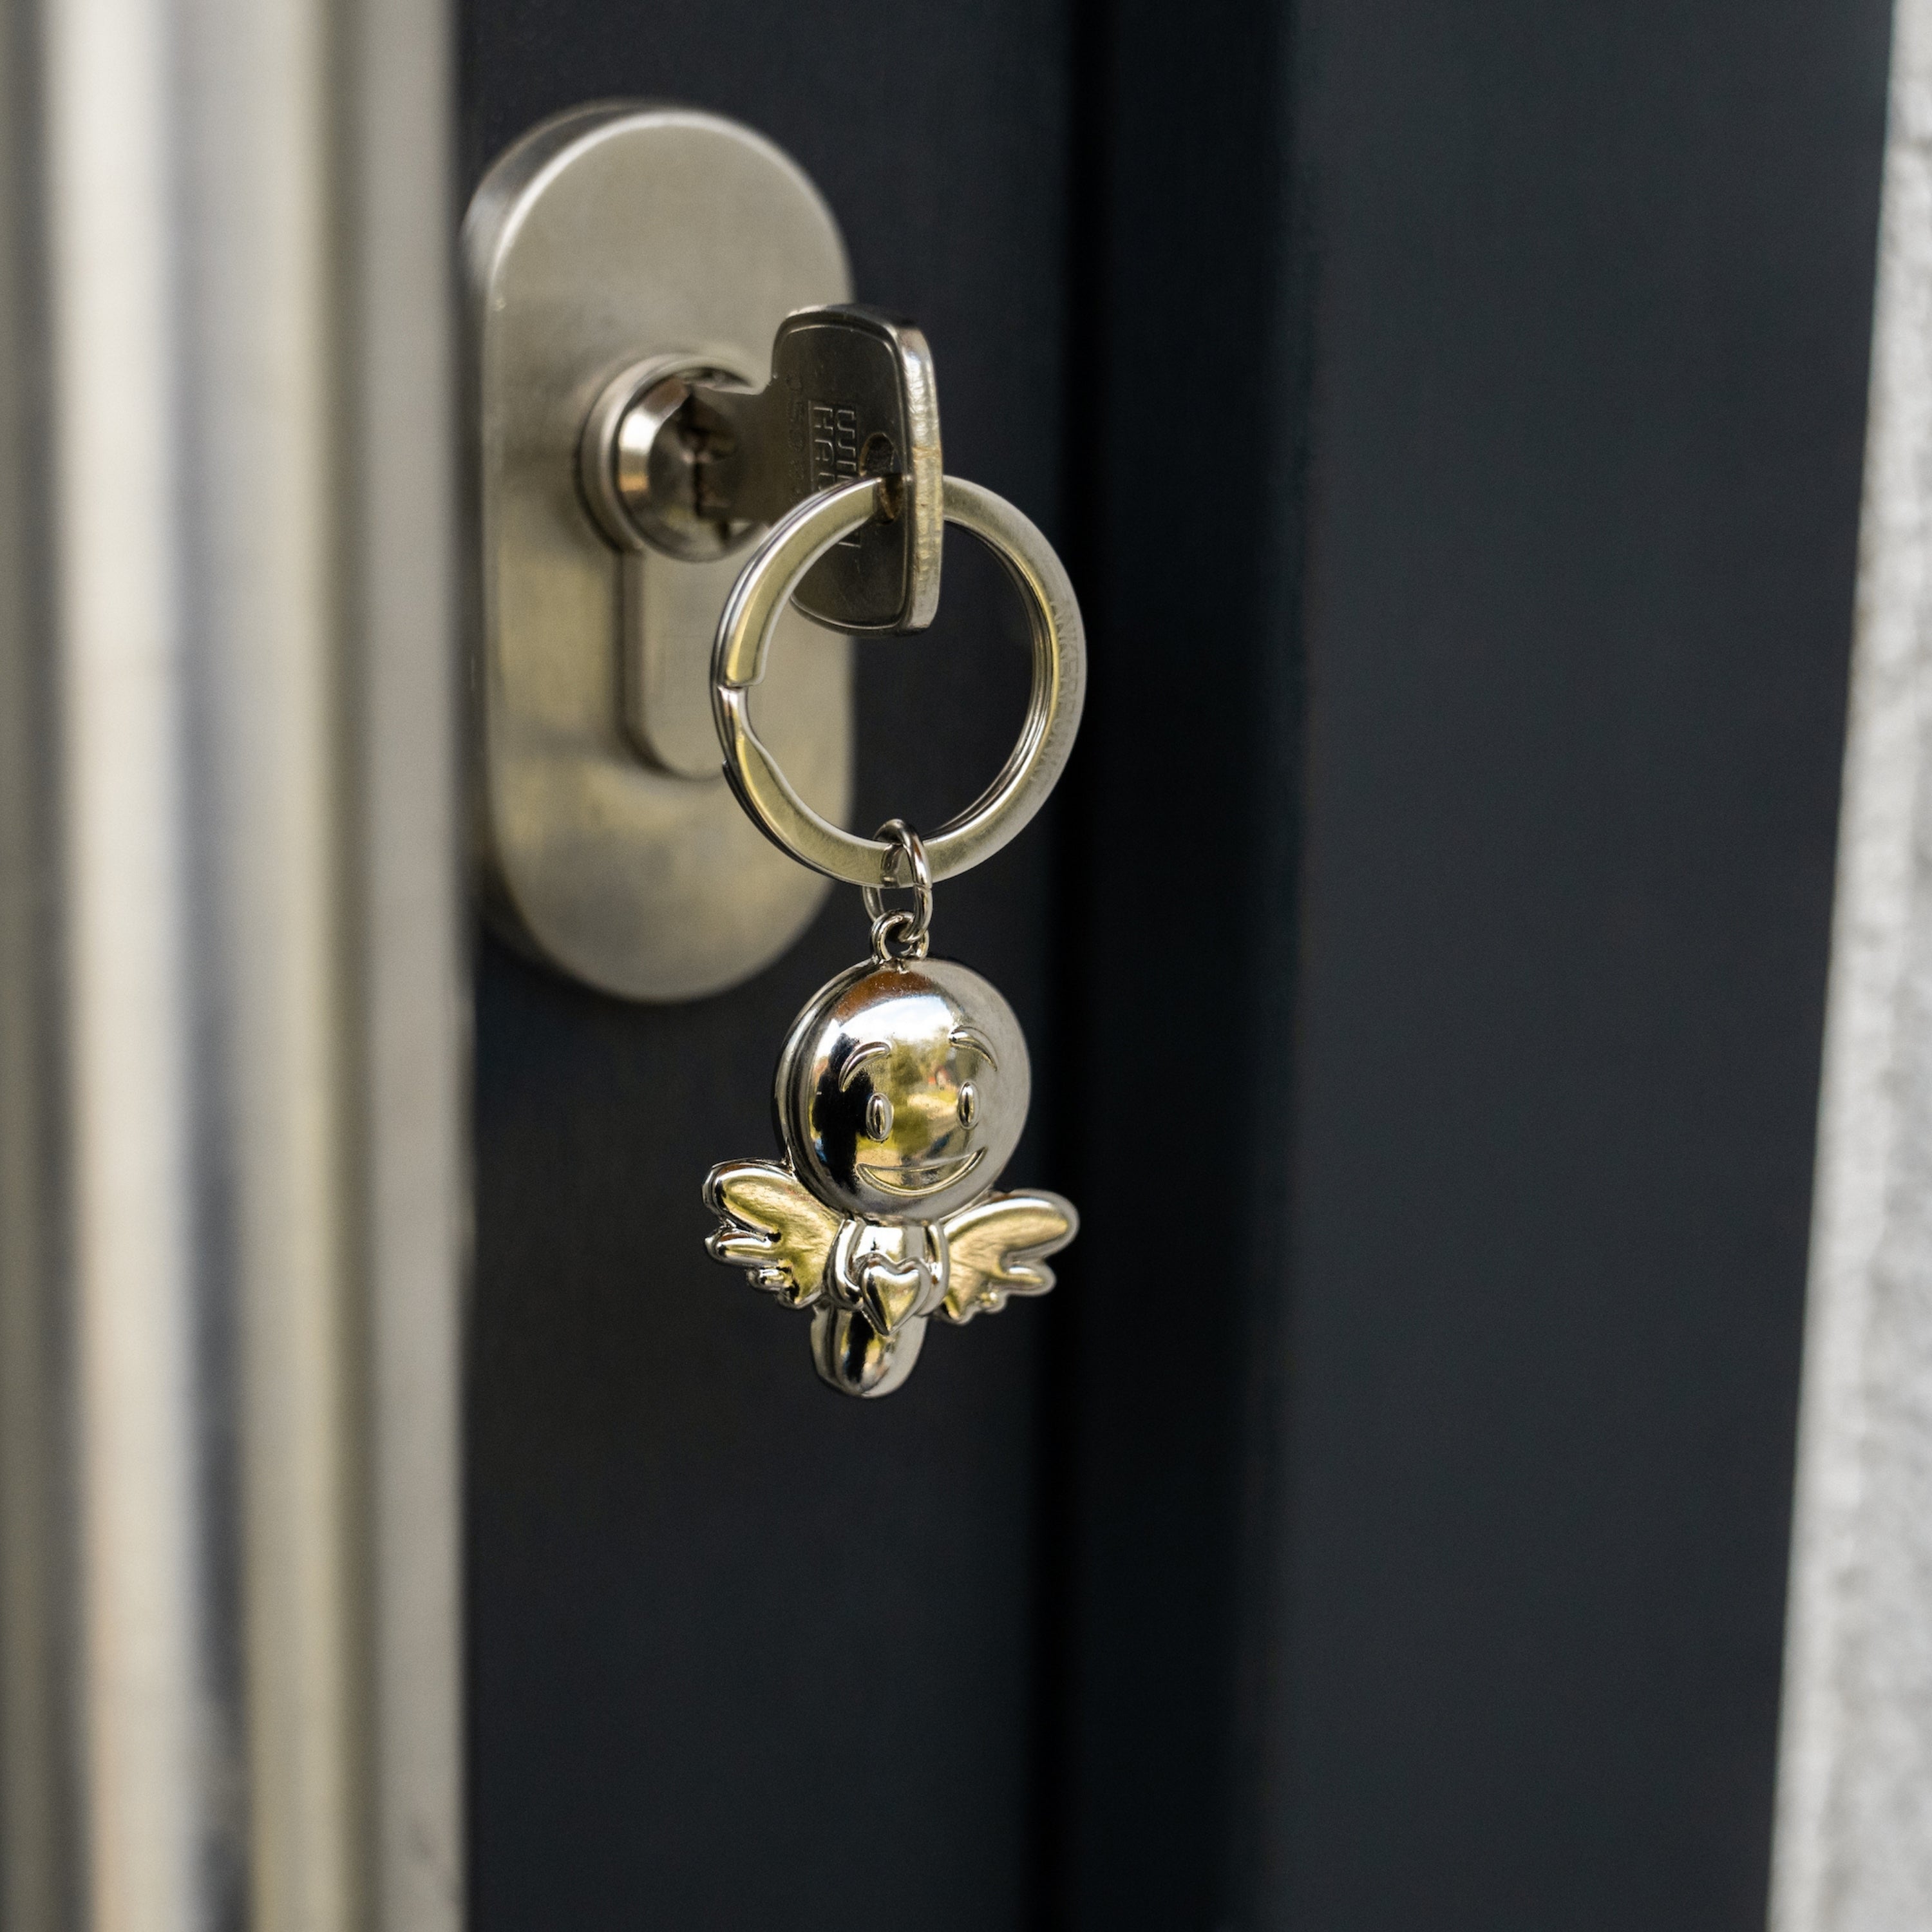 Schlüsselanhänger Lovely silber glänzend im Türschloss hängend